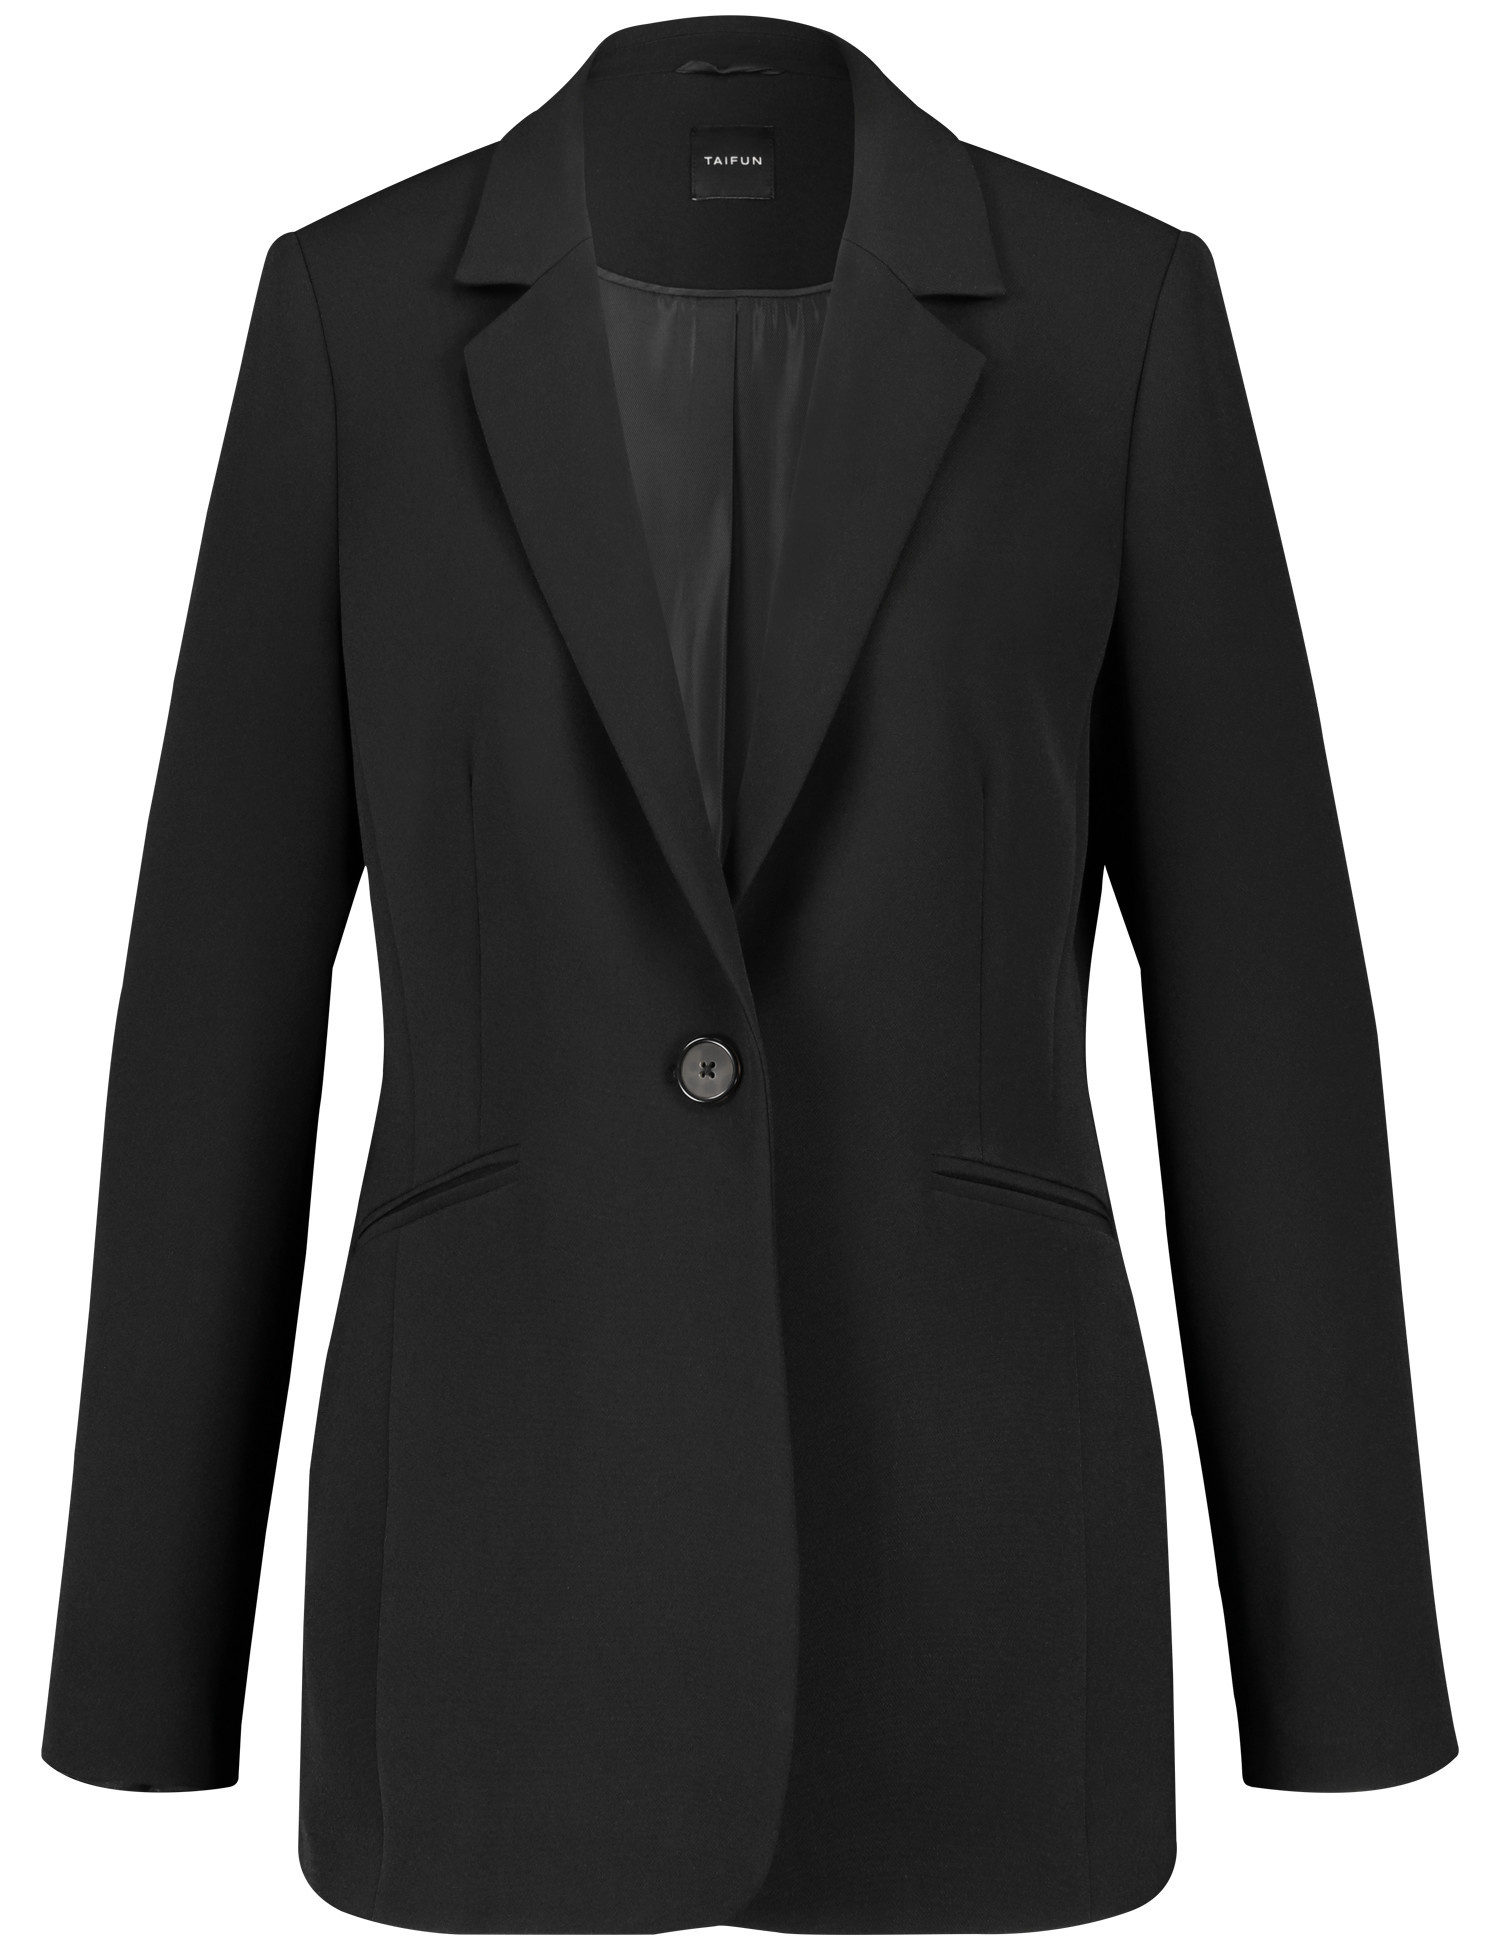 TAIFUN Damen Taillierter Blazer aus feiner Stretch-Qualität 70cm Langarm Revers Schwarz, 38 von Taifun